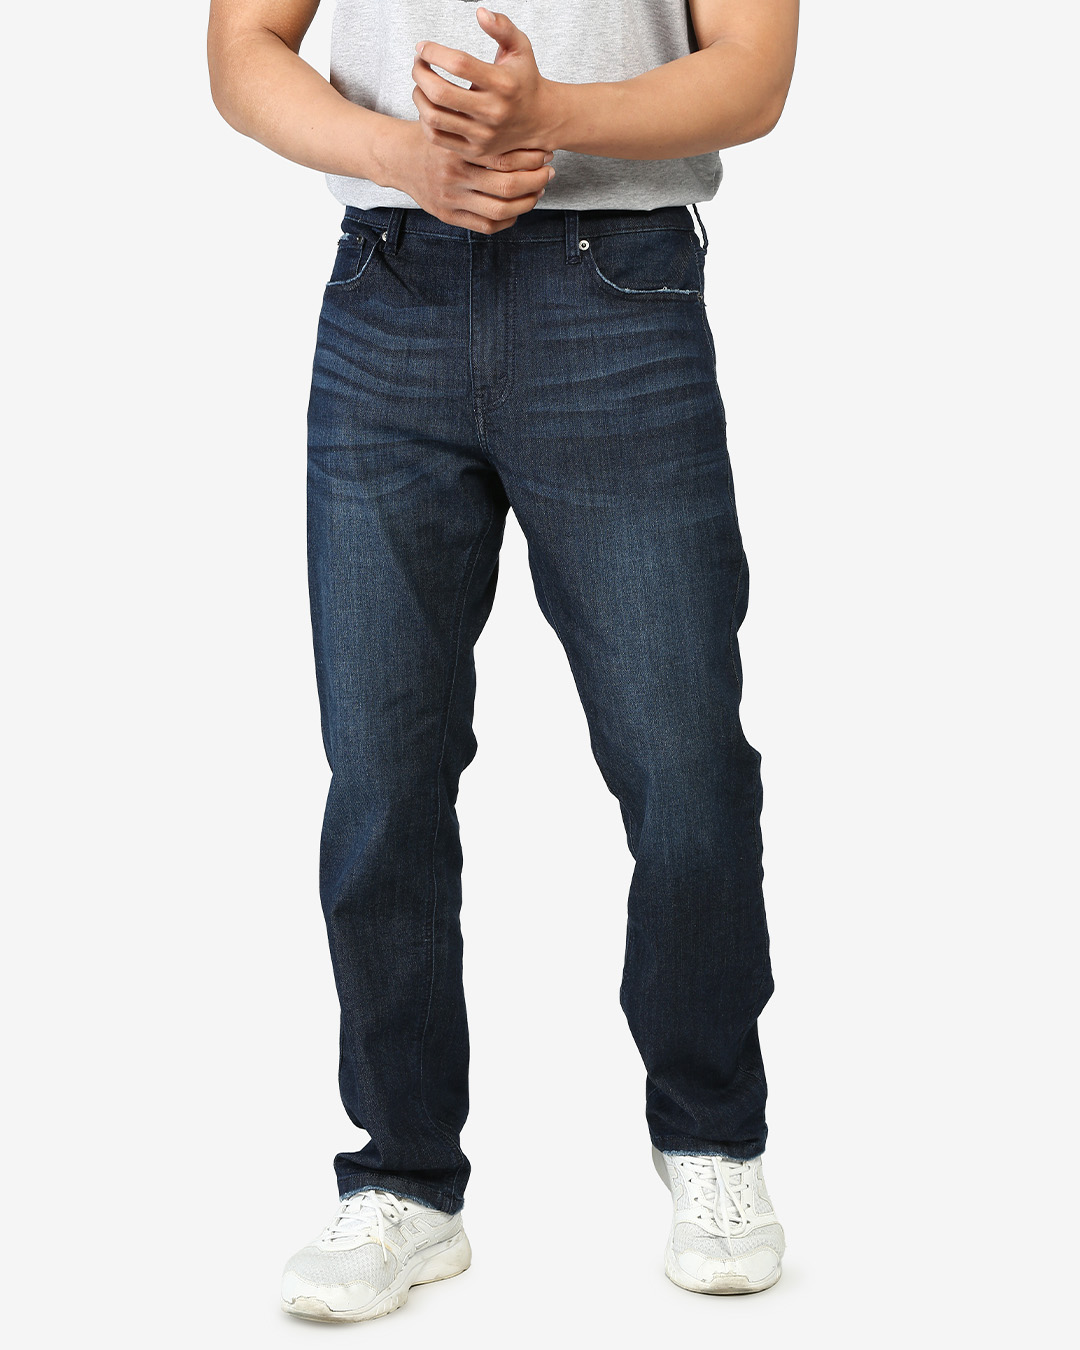 Quần jeans nam straight fit AVAFashion TNCPRTL - Xanh đen đậm